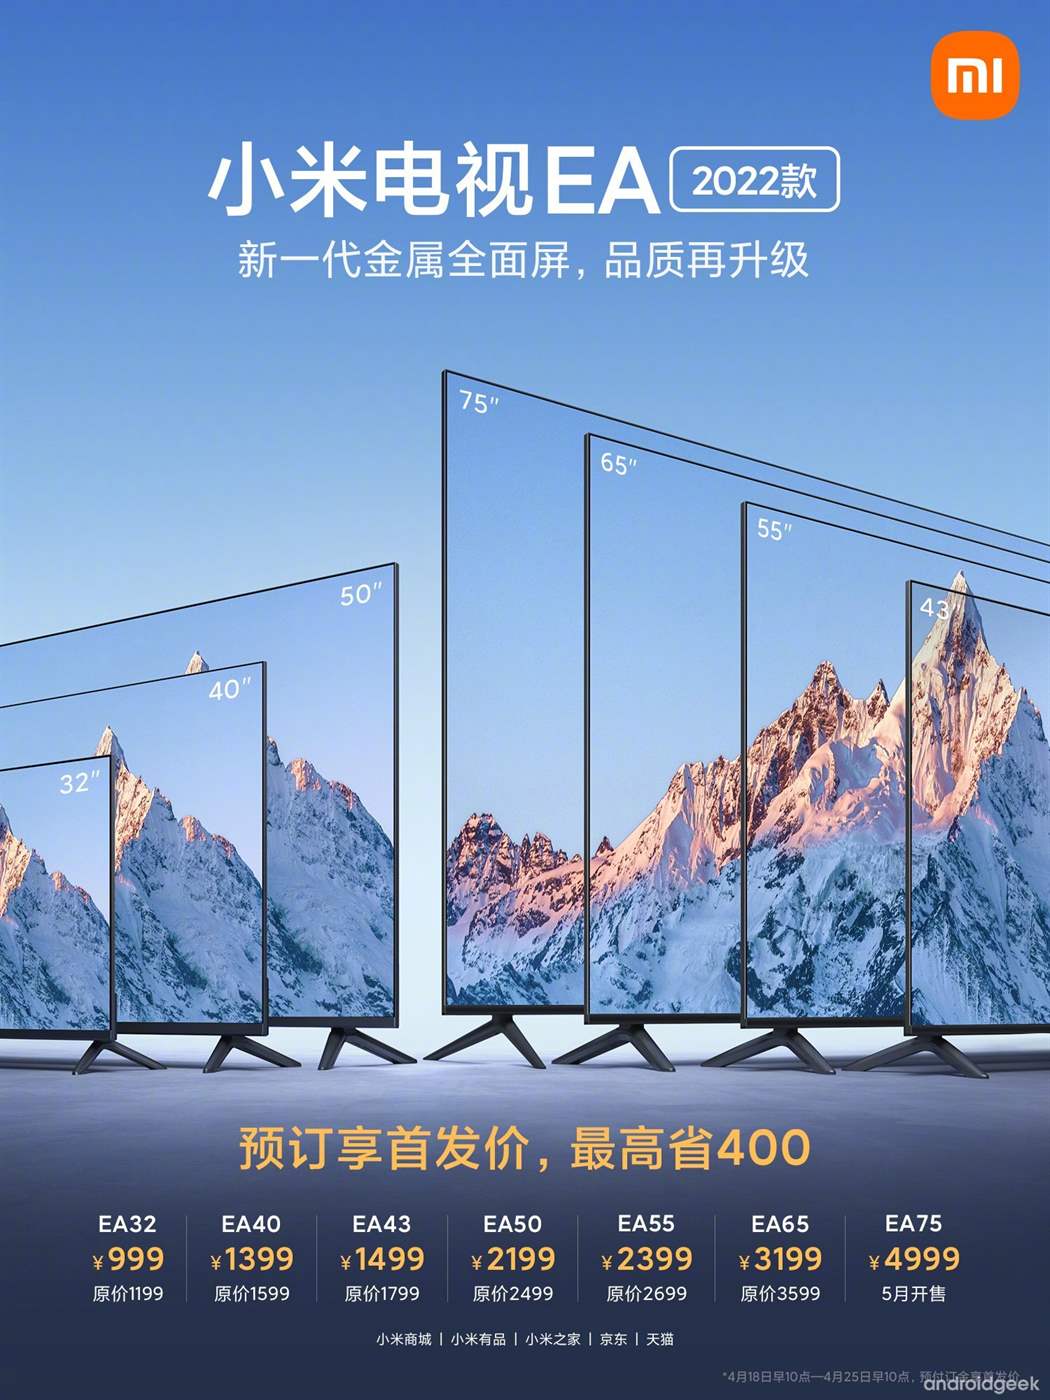 Xiaomi lança a sua nova linha de TV's - Mi TV EA 2022 2